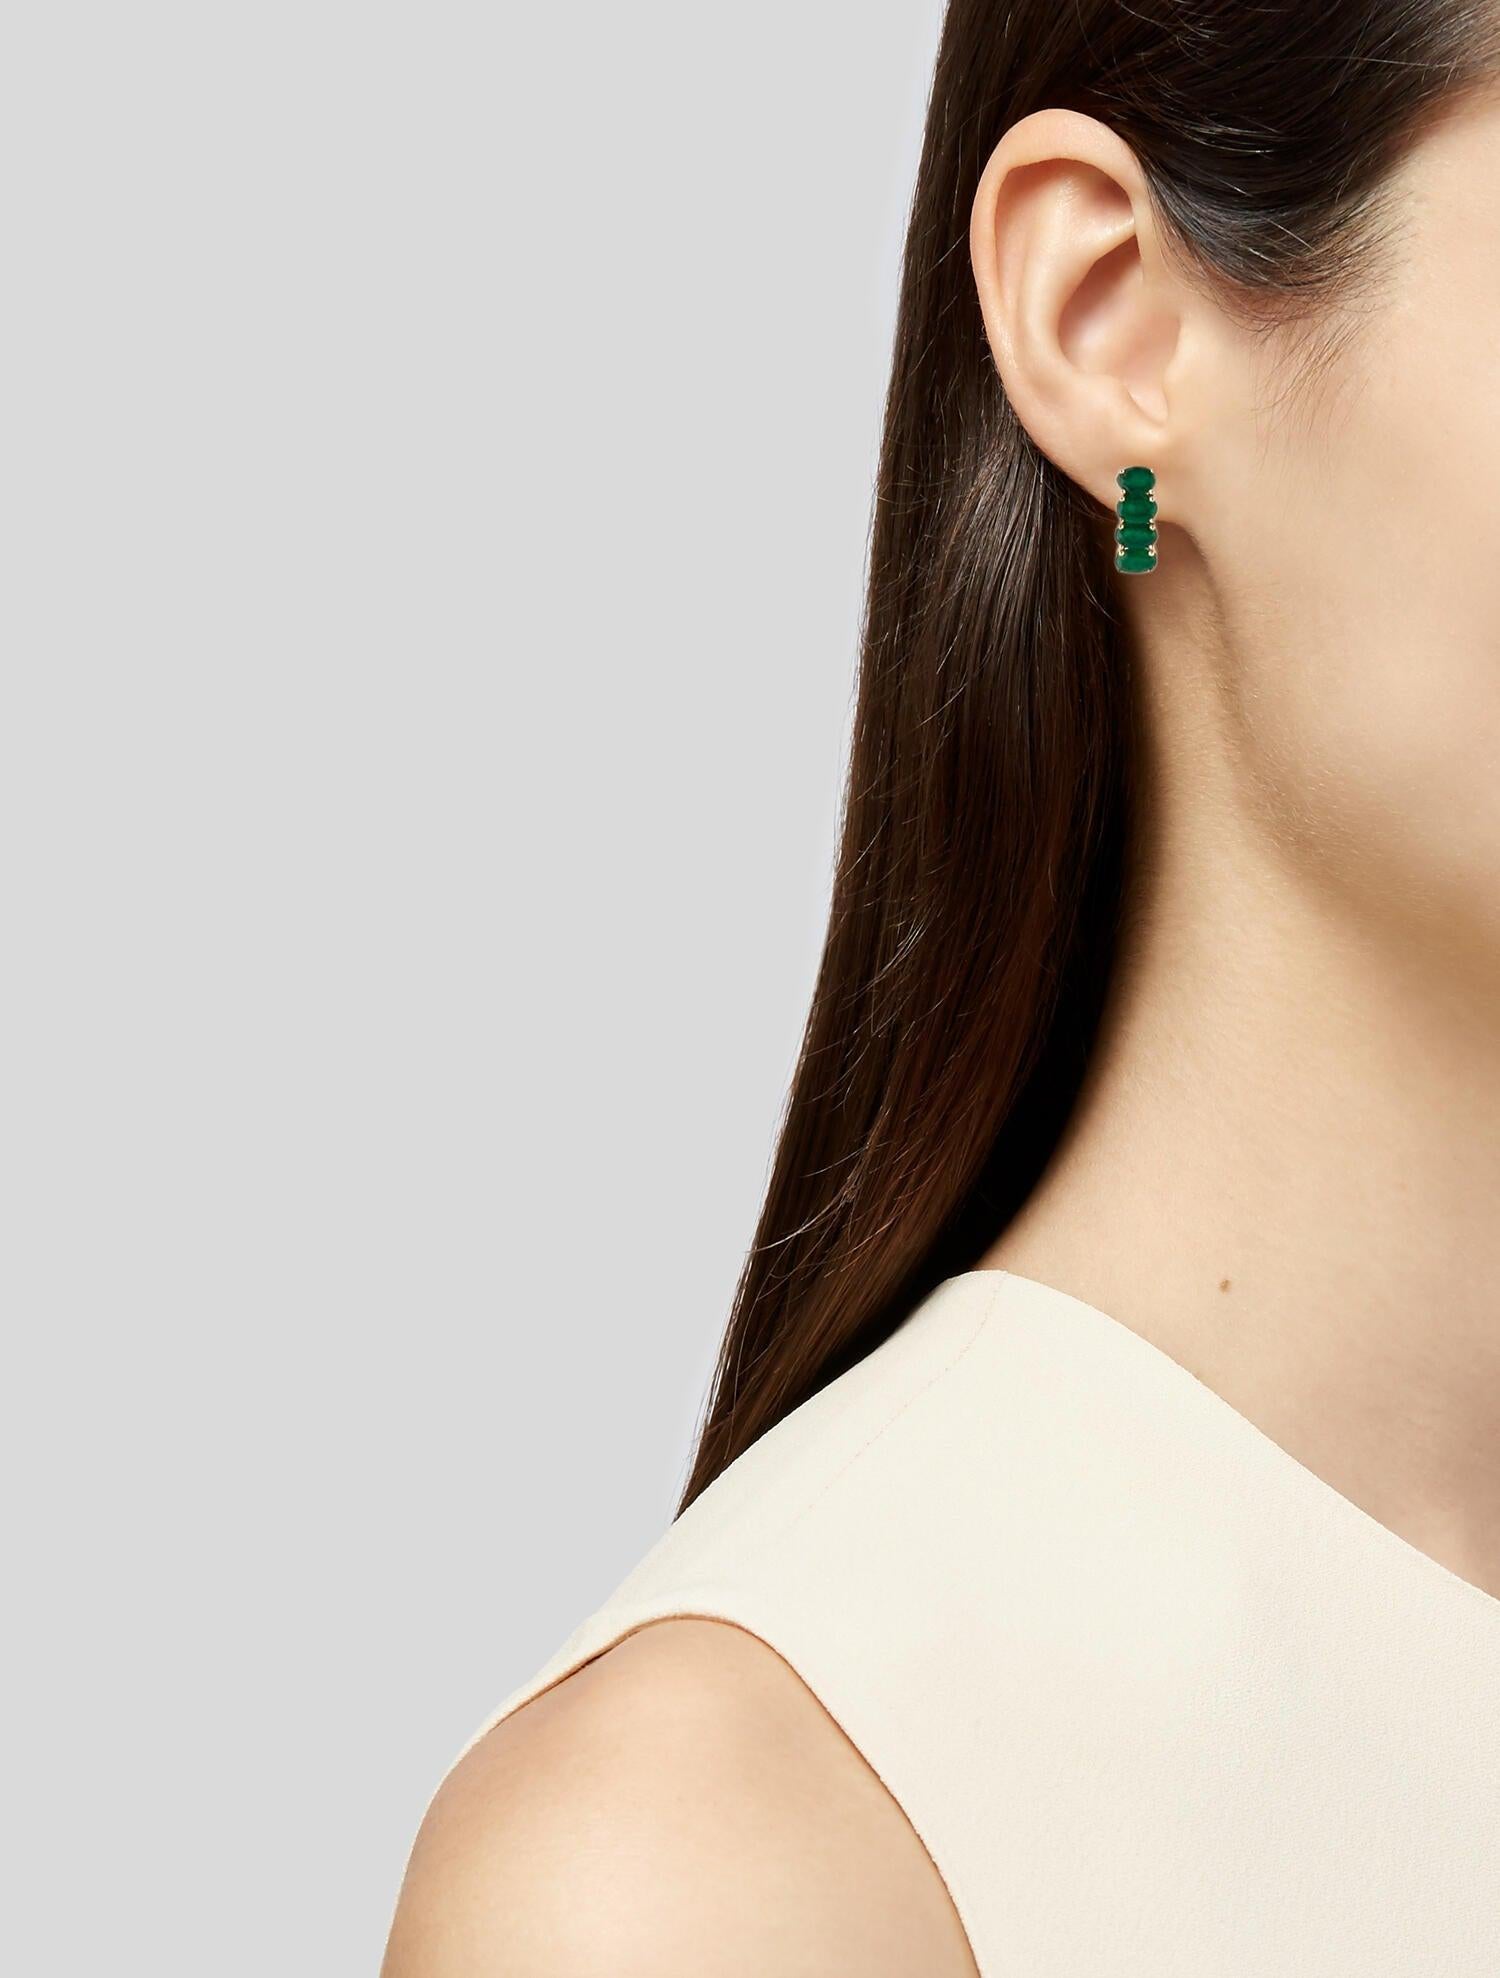 14K Emerald Earclip Earrings - 2.35ctw, Elegant Gemstone Jewelry, Classic Style For Sale 1